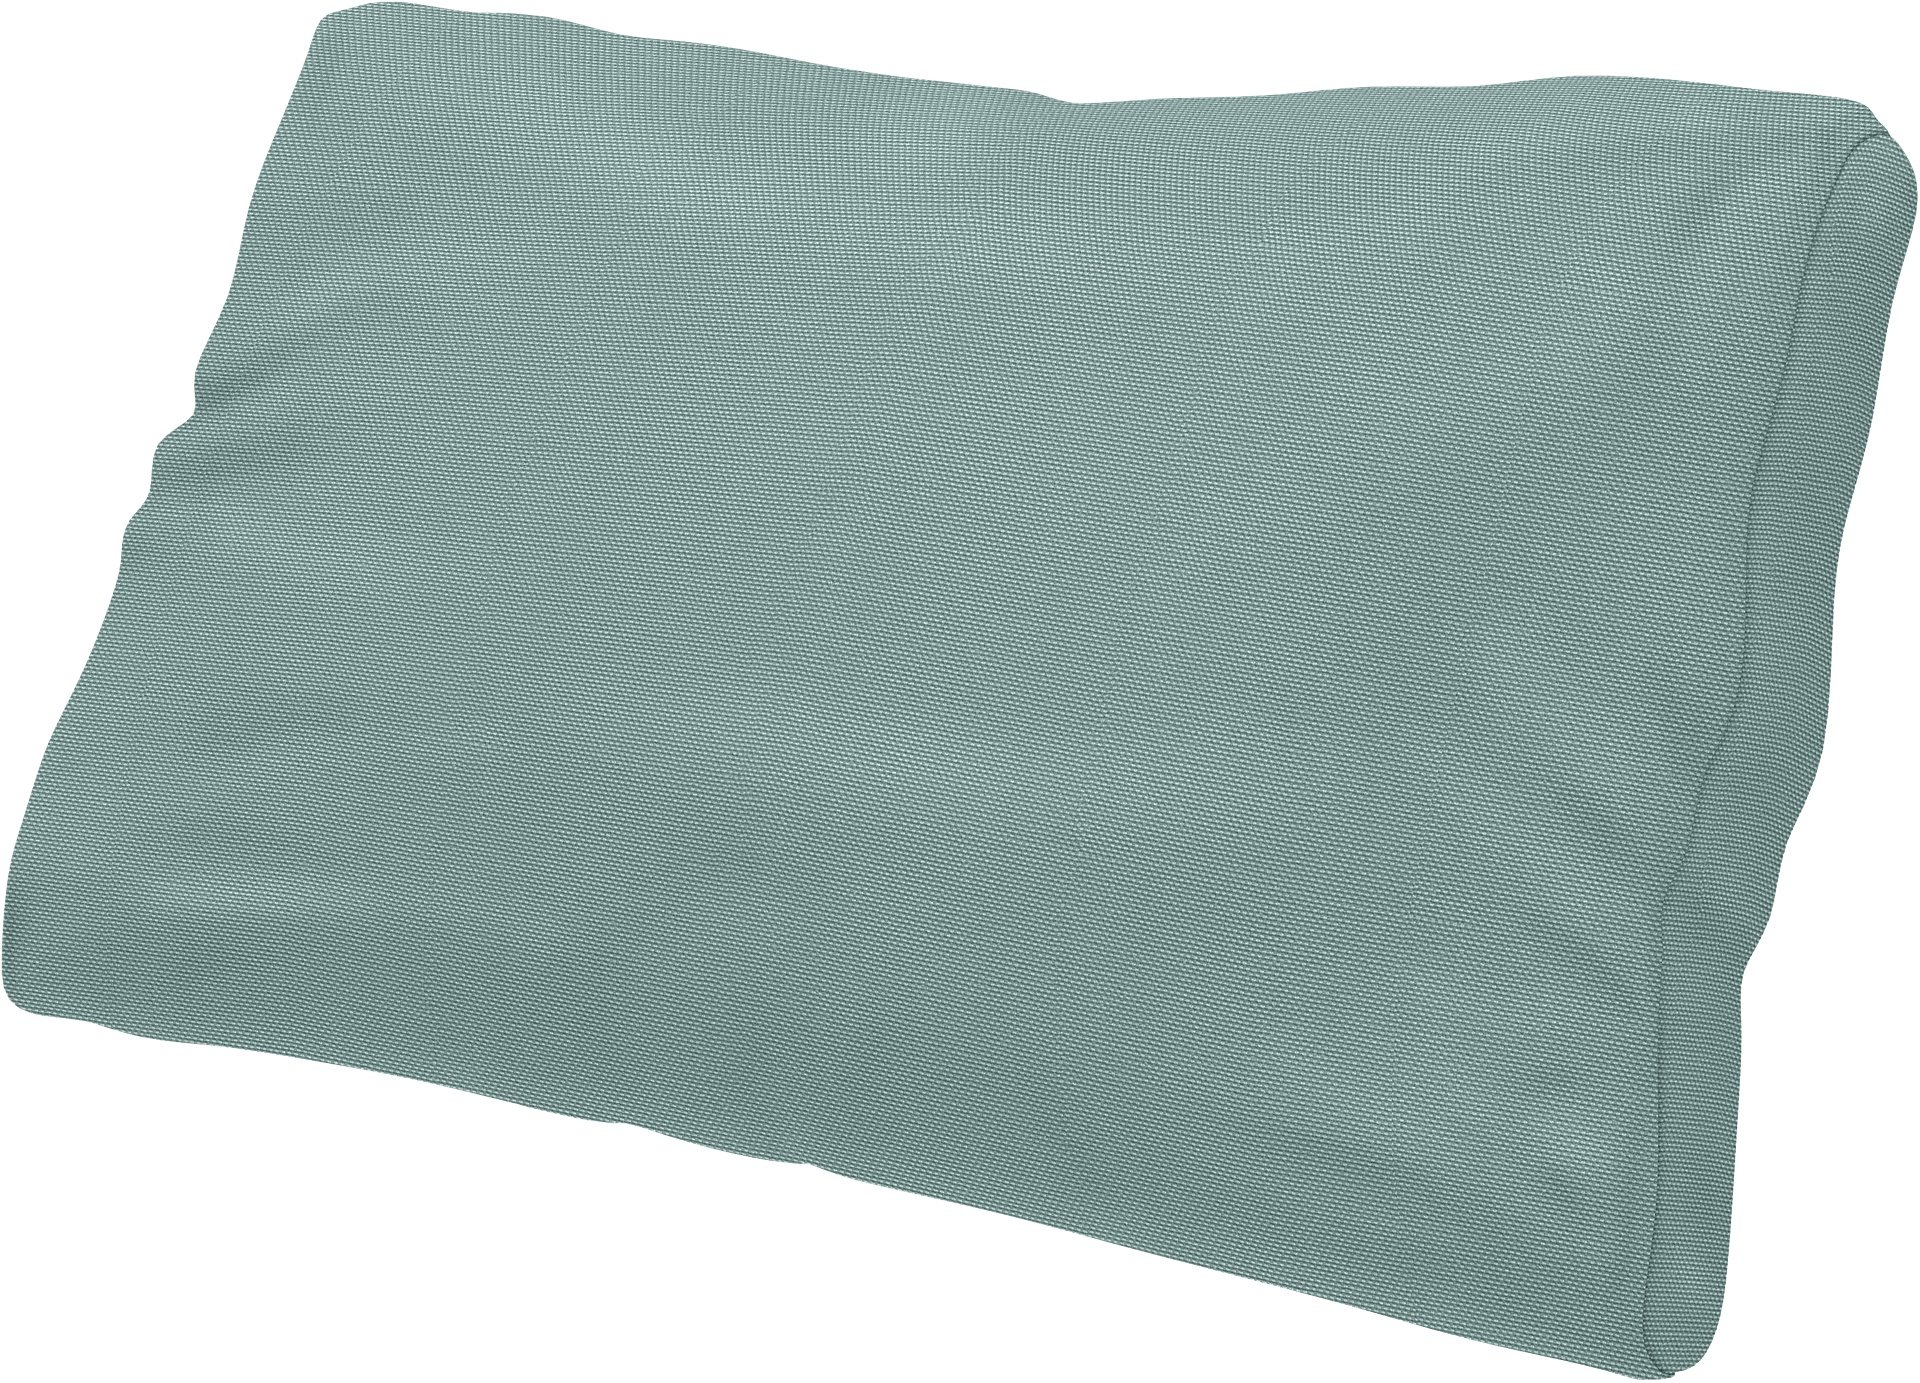 IKEA - Lumbar cushion cover Farlov, Mineral Blue, Cotton - Bemz